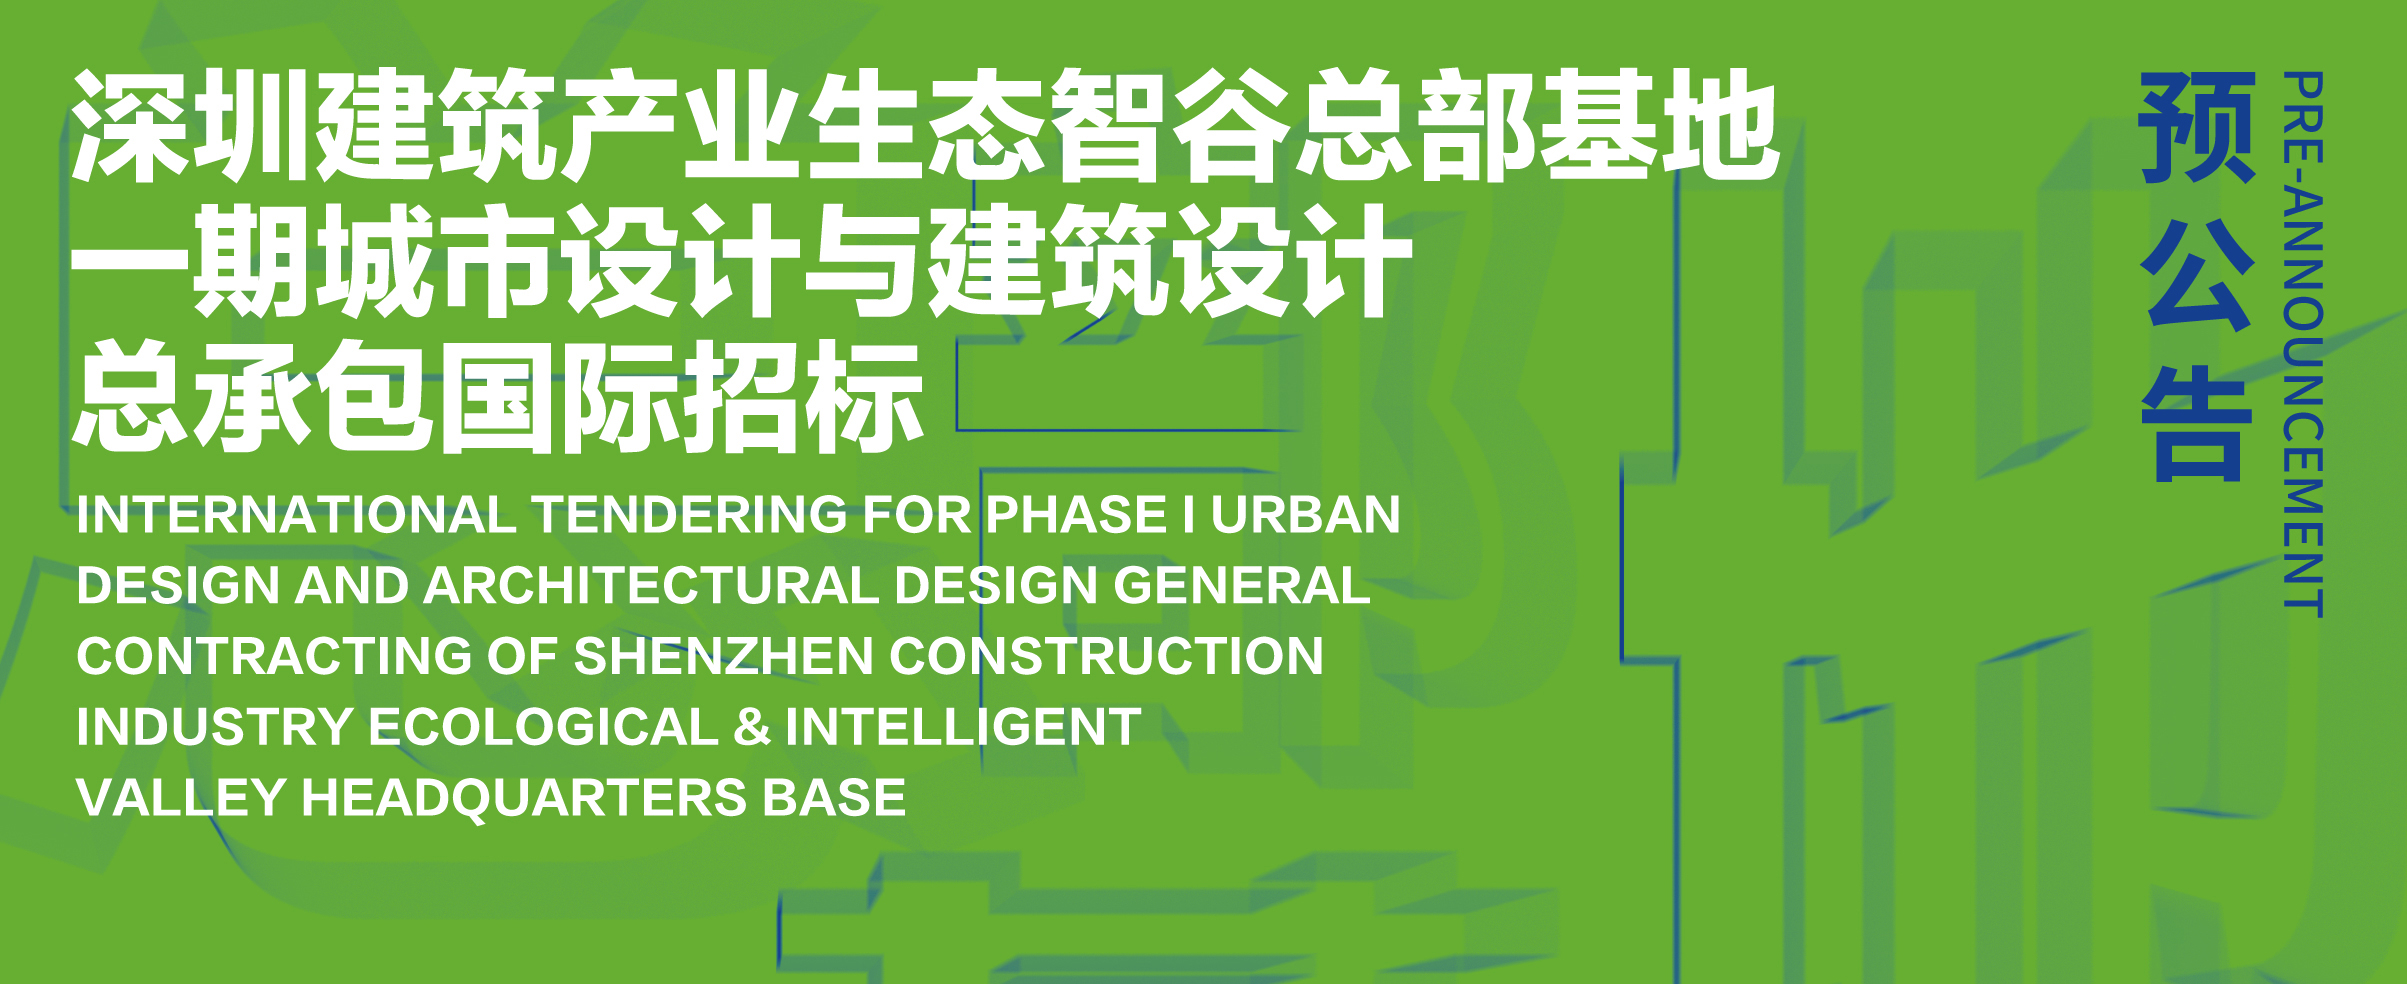 预公告 | 深圳建筑产业生态智谷总部基地一期城市设计与建筑设计总承包国际招标